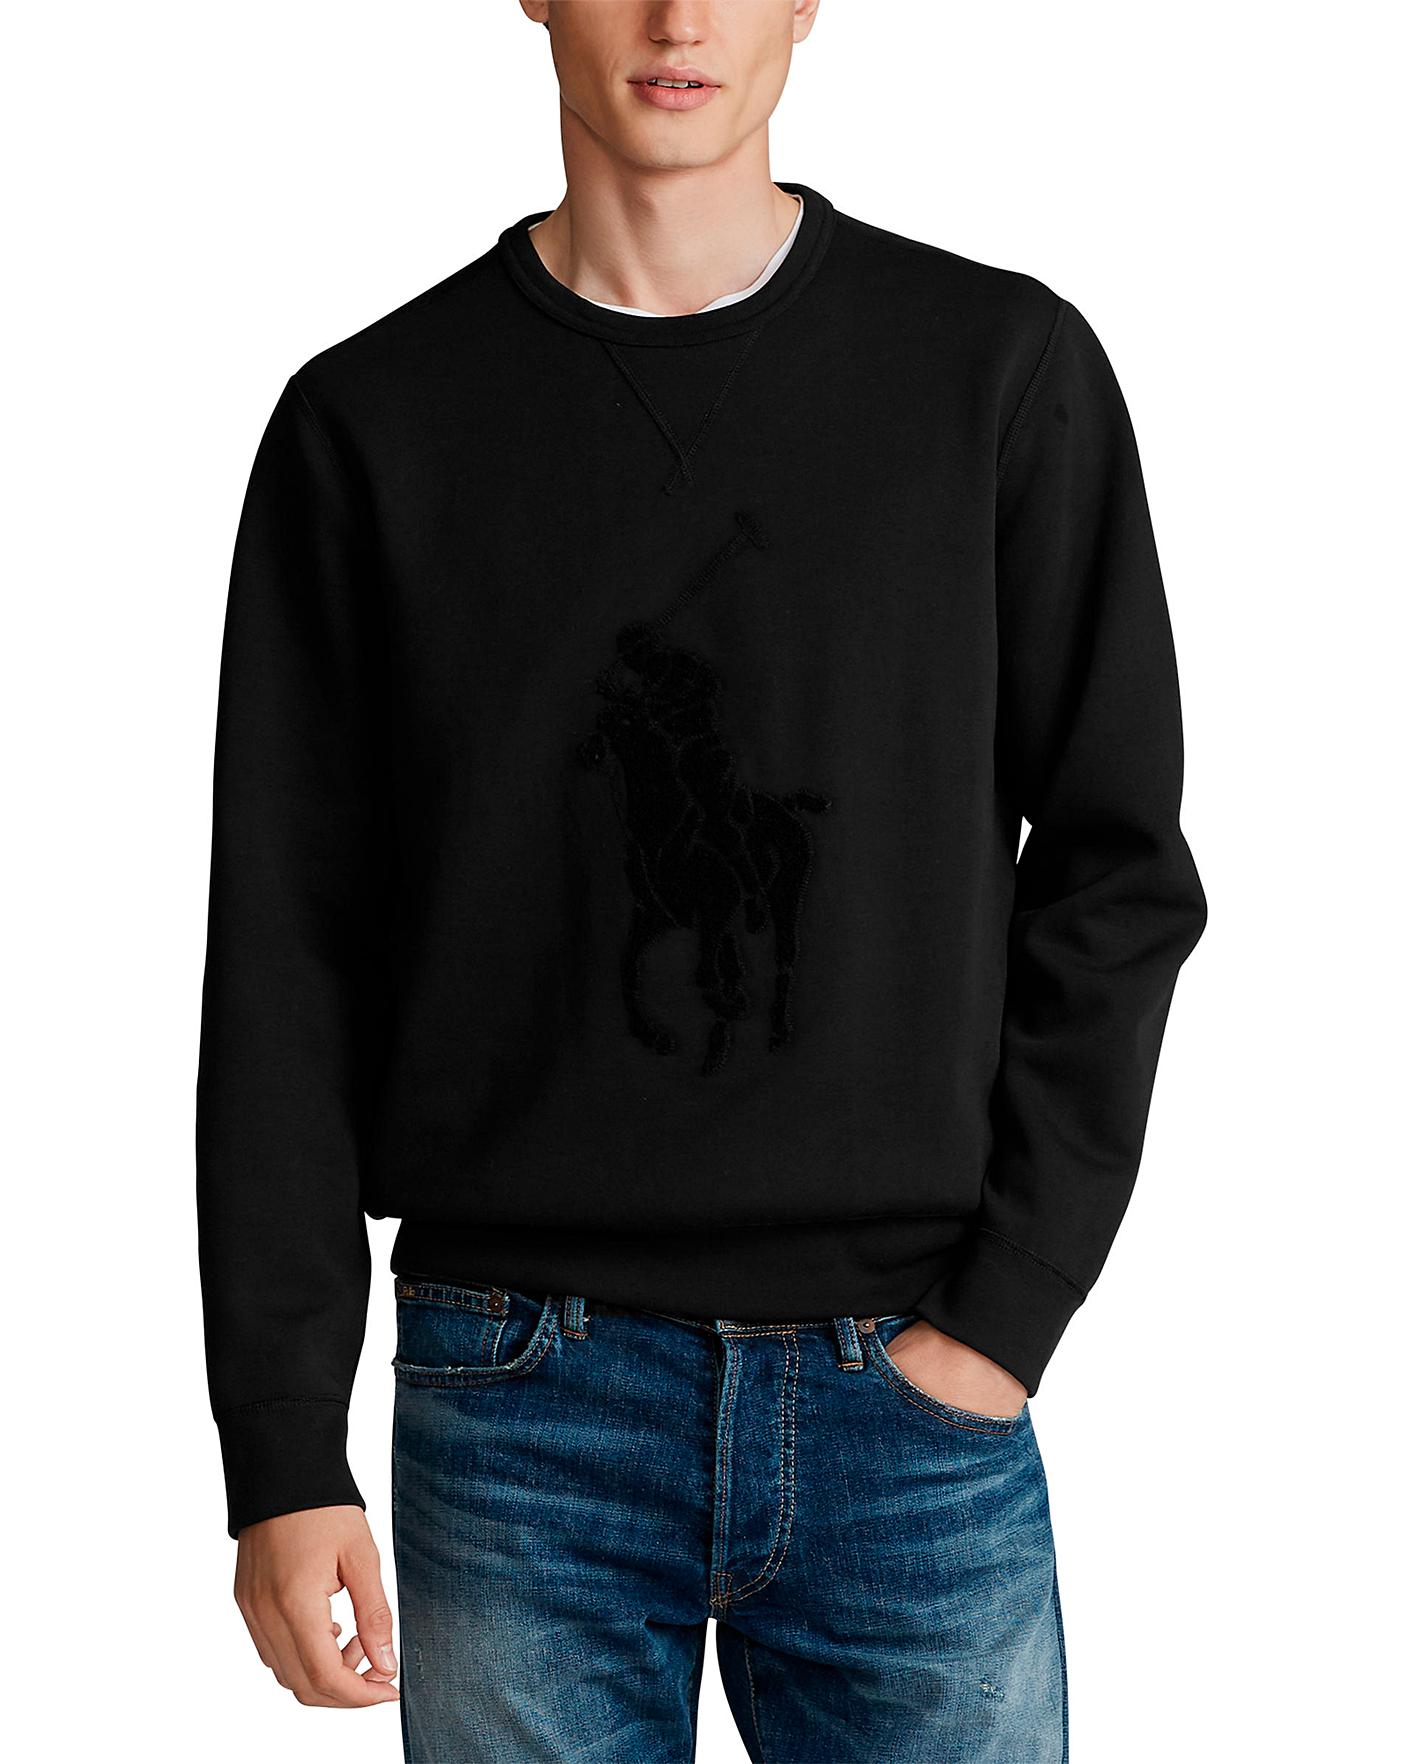 polo player sweatshirt